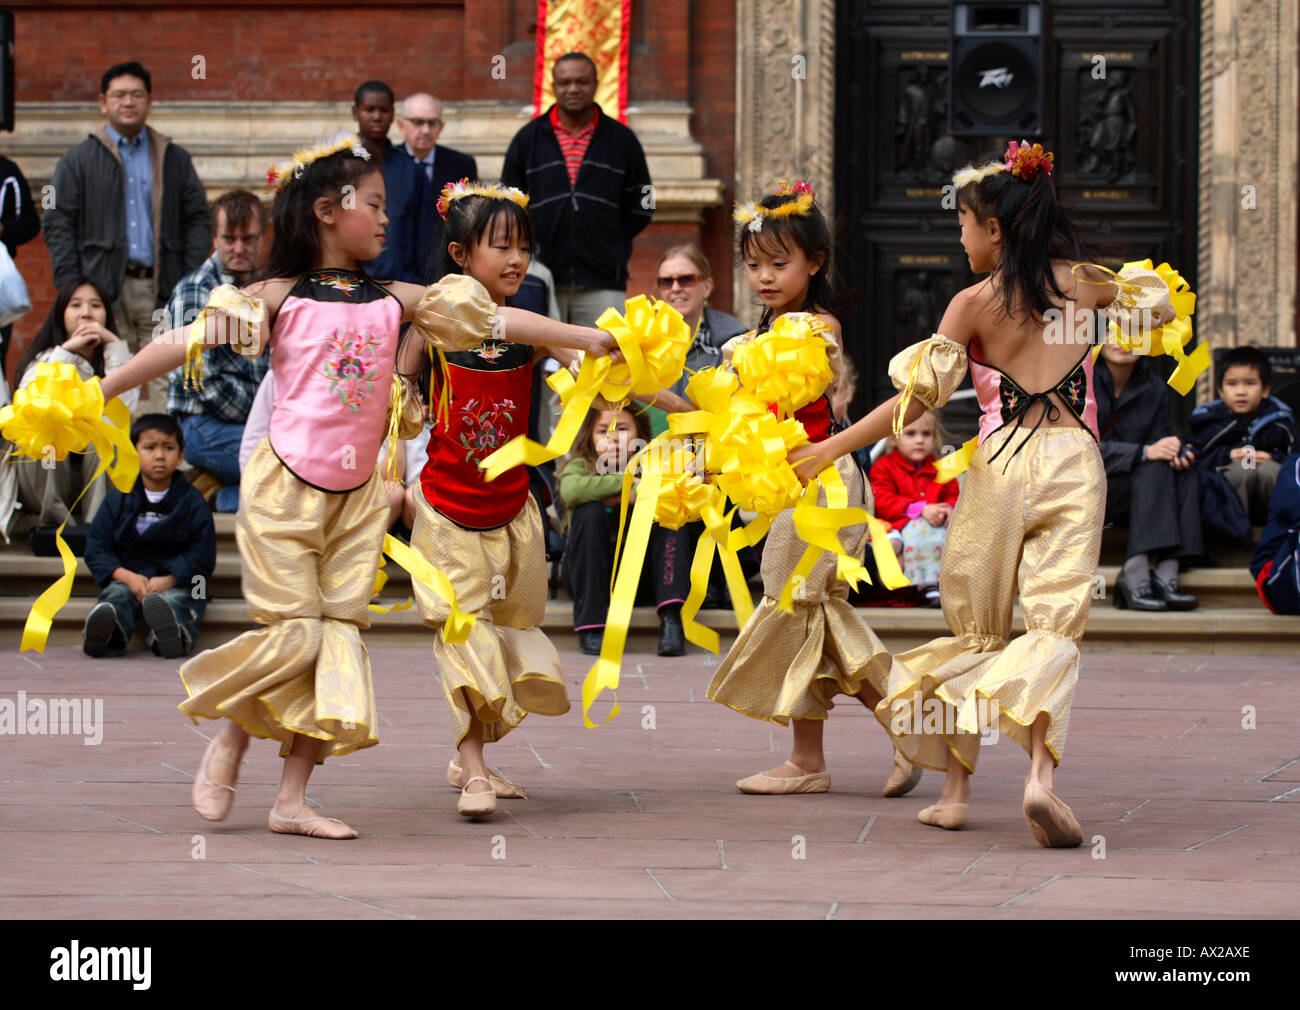 Giovani ballerini cinesi che si esibiscono di fronte a un grande pubblico al Festival cinese di metà autunno, V&A Museum, Londra, 8 ottobre 2006 Foto Stock